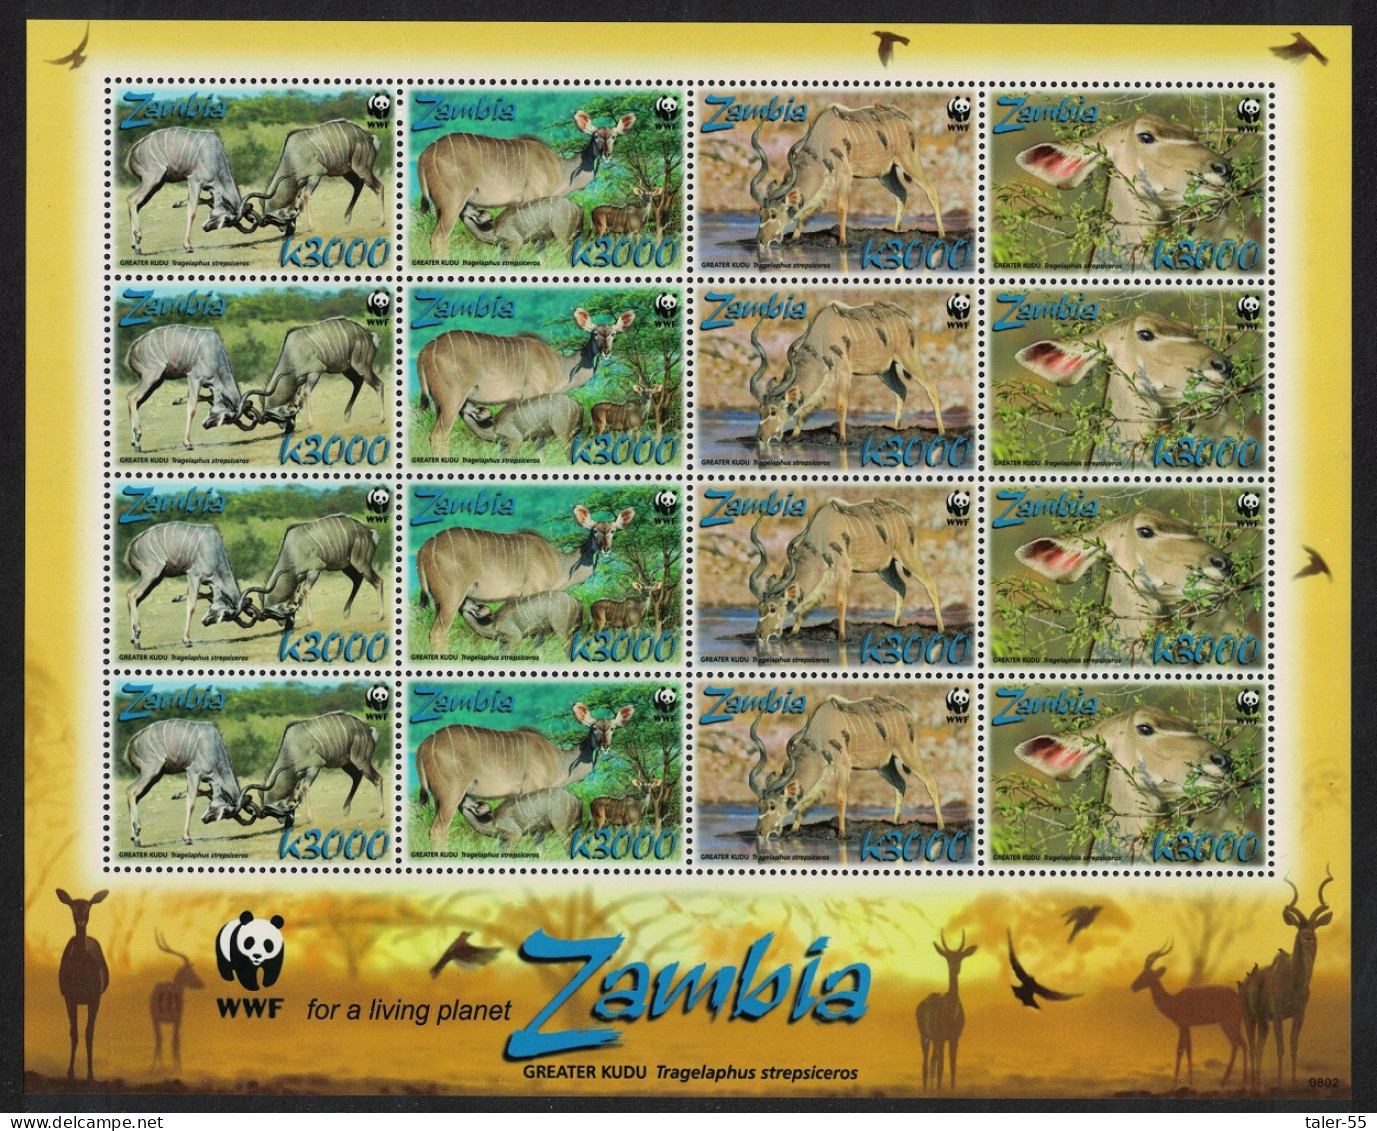 Zambia WWF Greater Kudu Sheetlet Of 4 Sets 2008 MNH SG#1049-1052 MI#1606-1609 Sc#1103a-d - Zambie (1965-...)